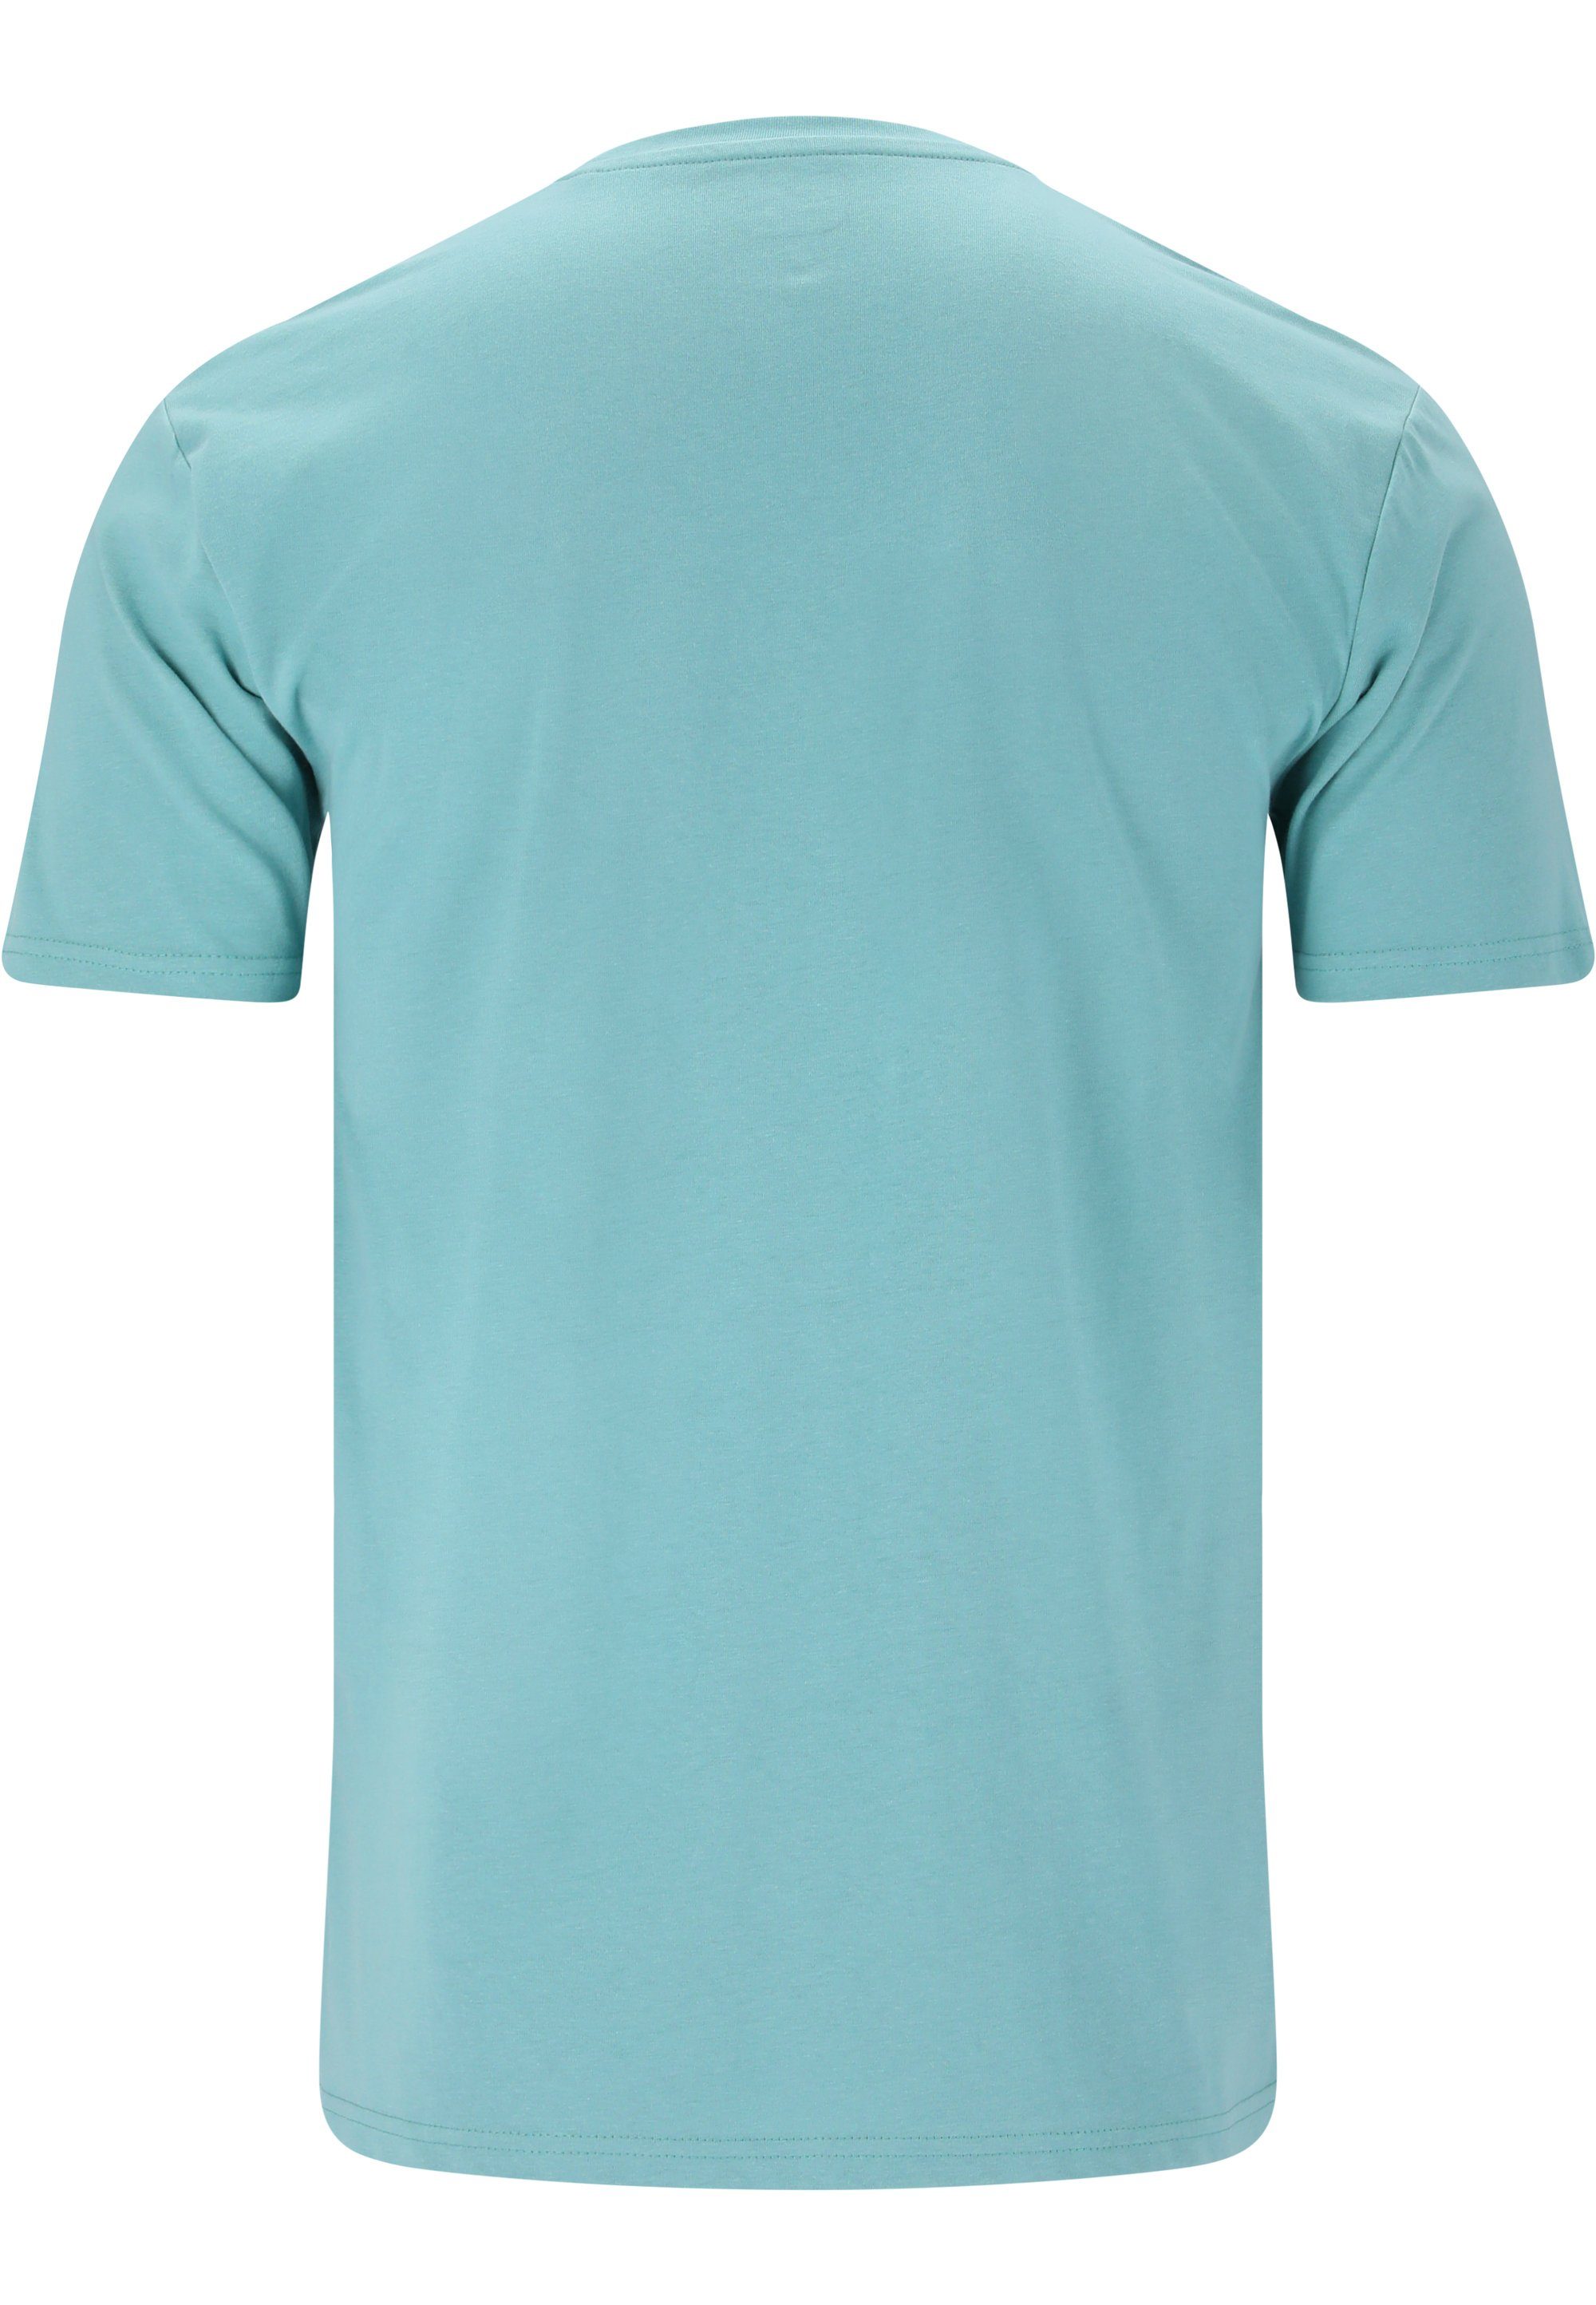 im CRUZ Qualität T-Shirt Beachlife sommerlichen atmungsaktiver Design hellblau mit